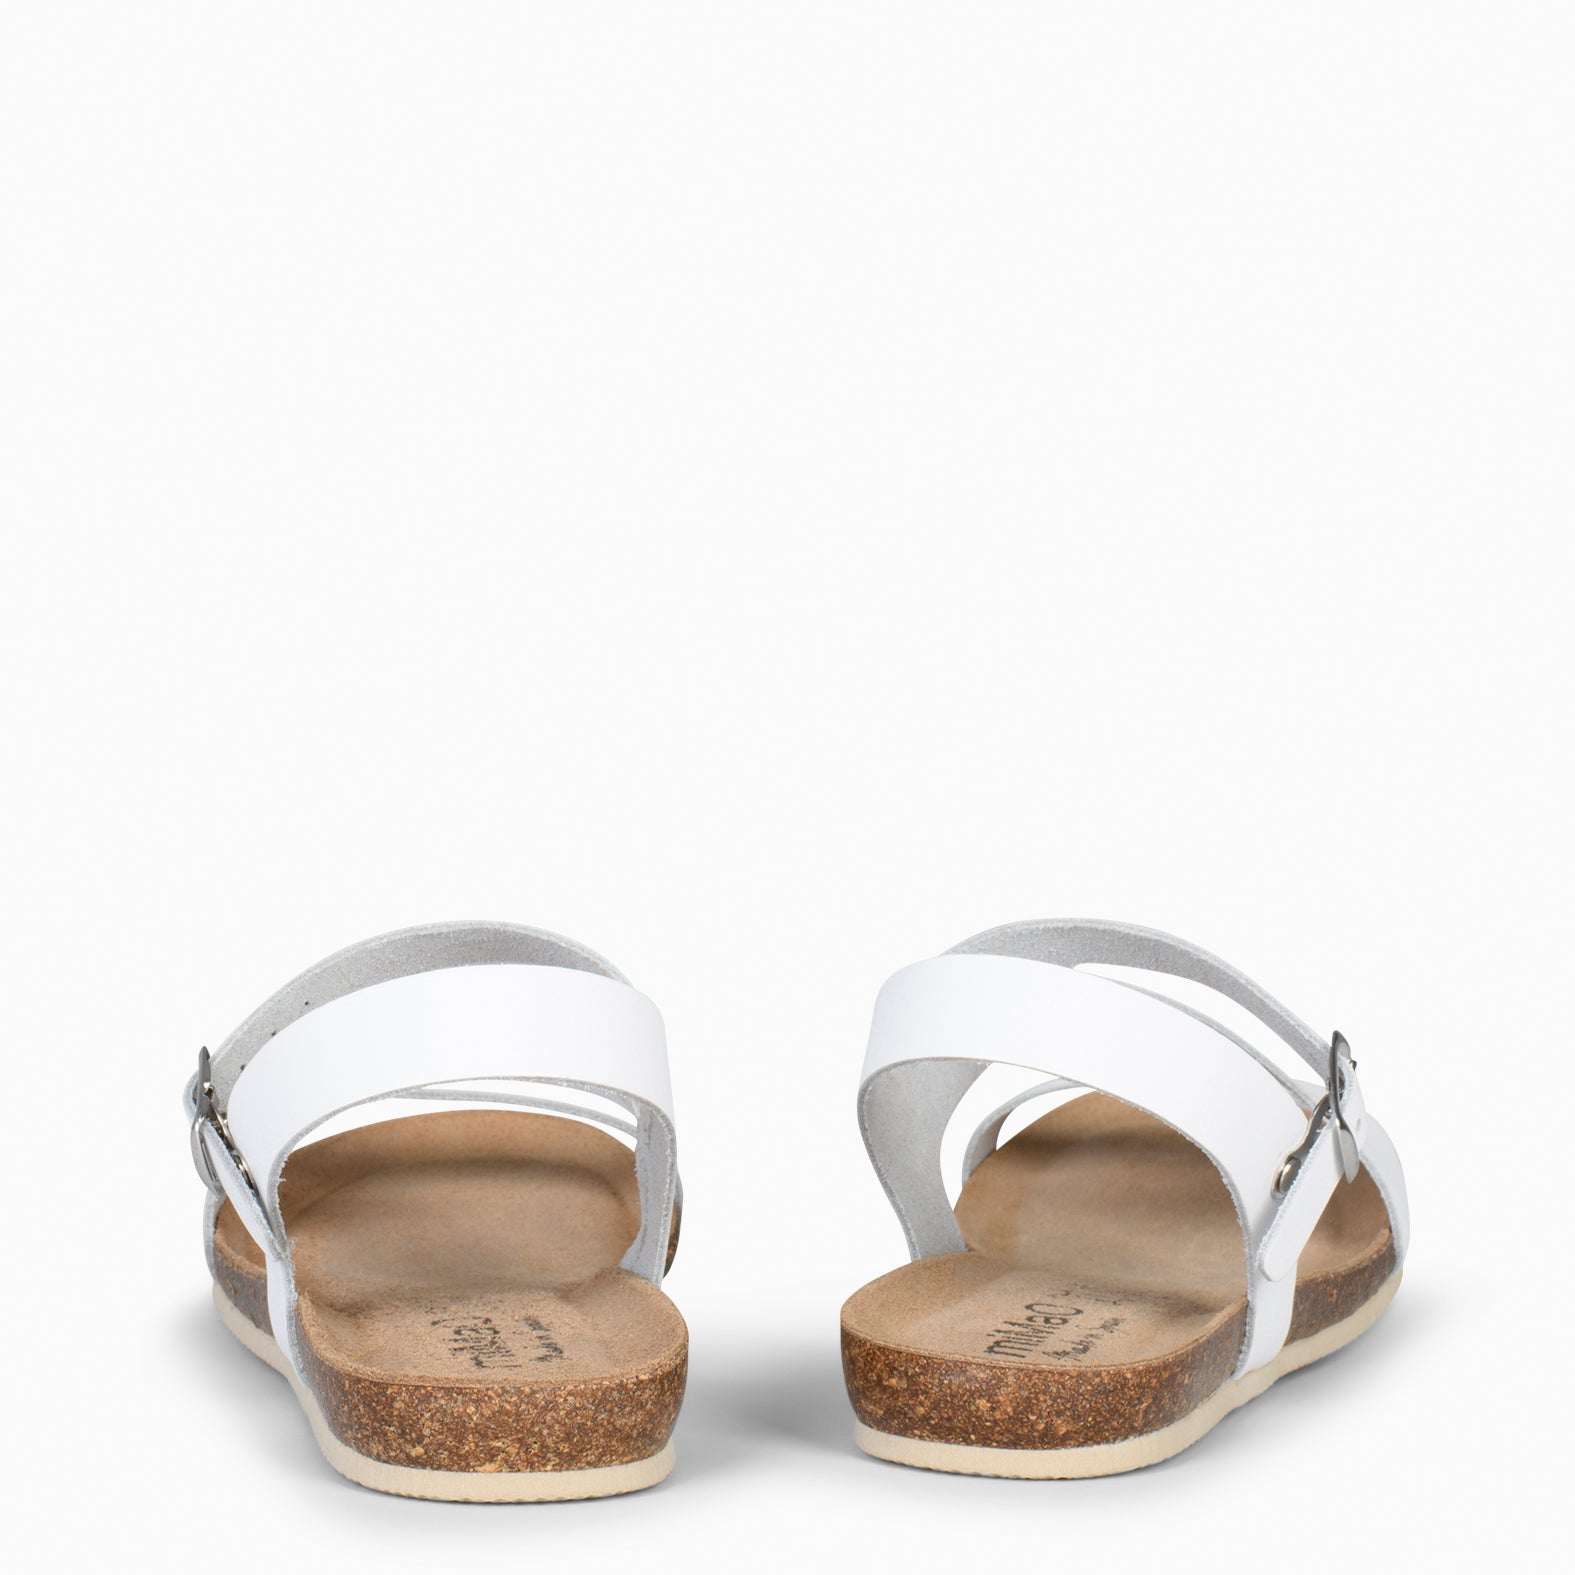 LIS – Sandales en cuir BLANC et liège